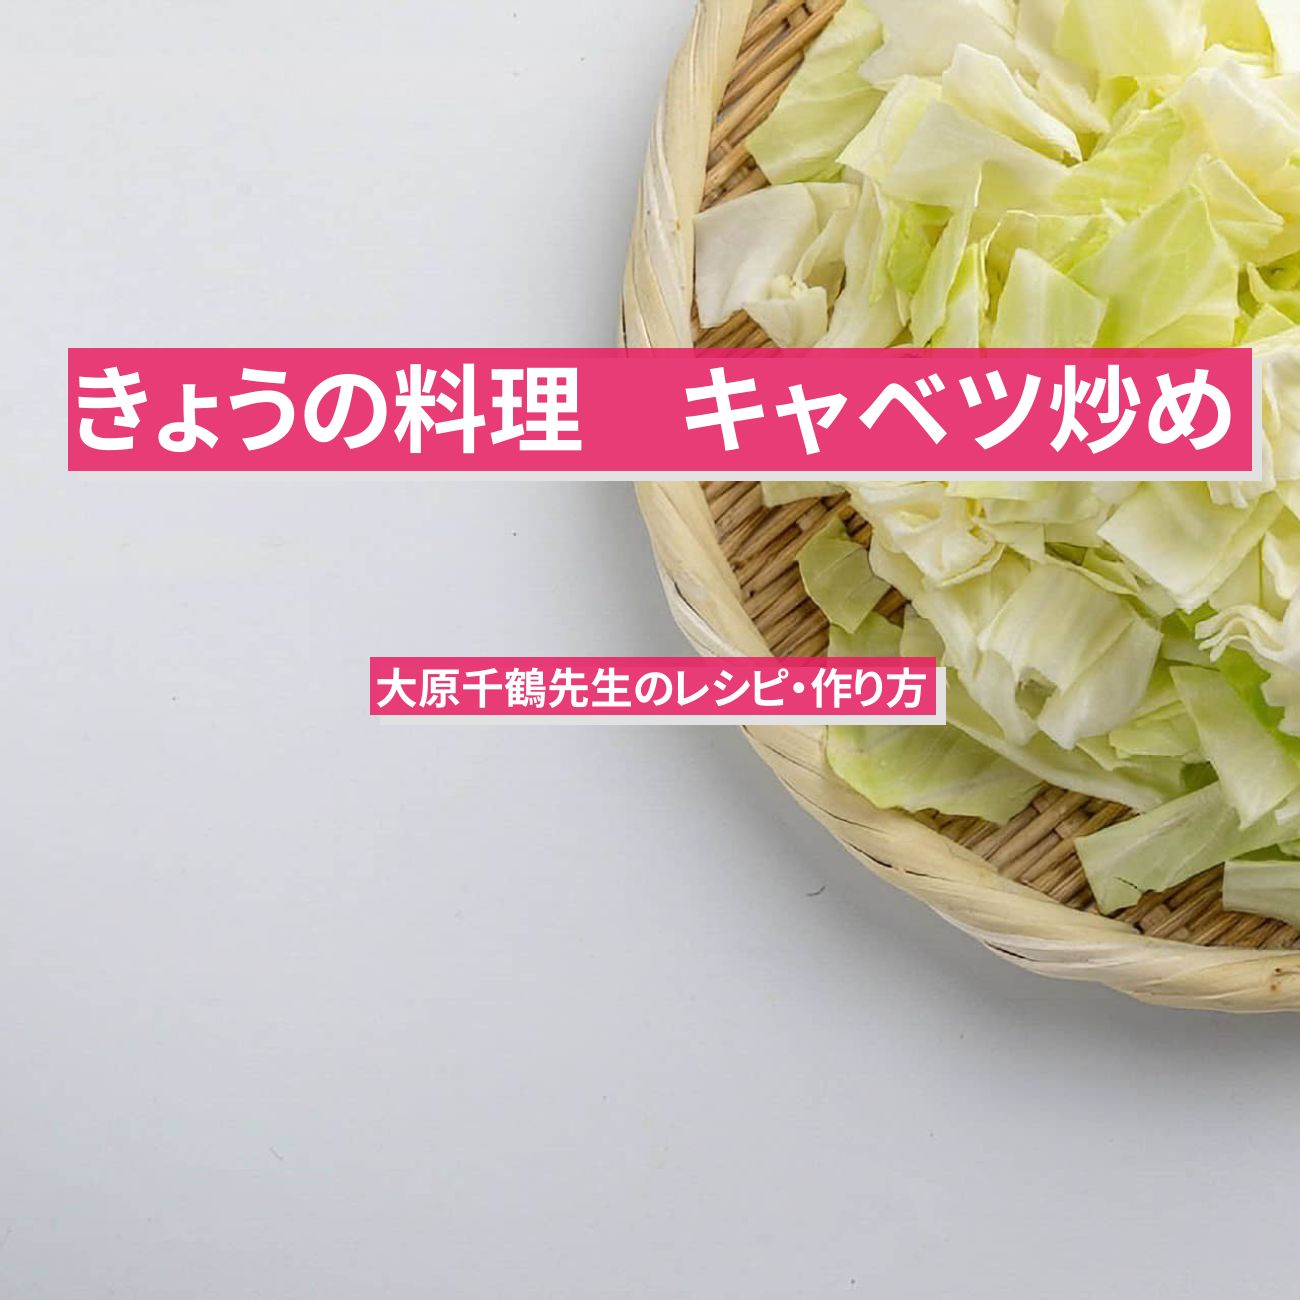 【きょうの料理】『キャベツ炒め』大原千鶴先生のレシピ・作り方